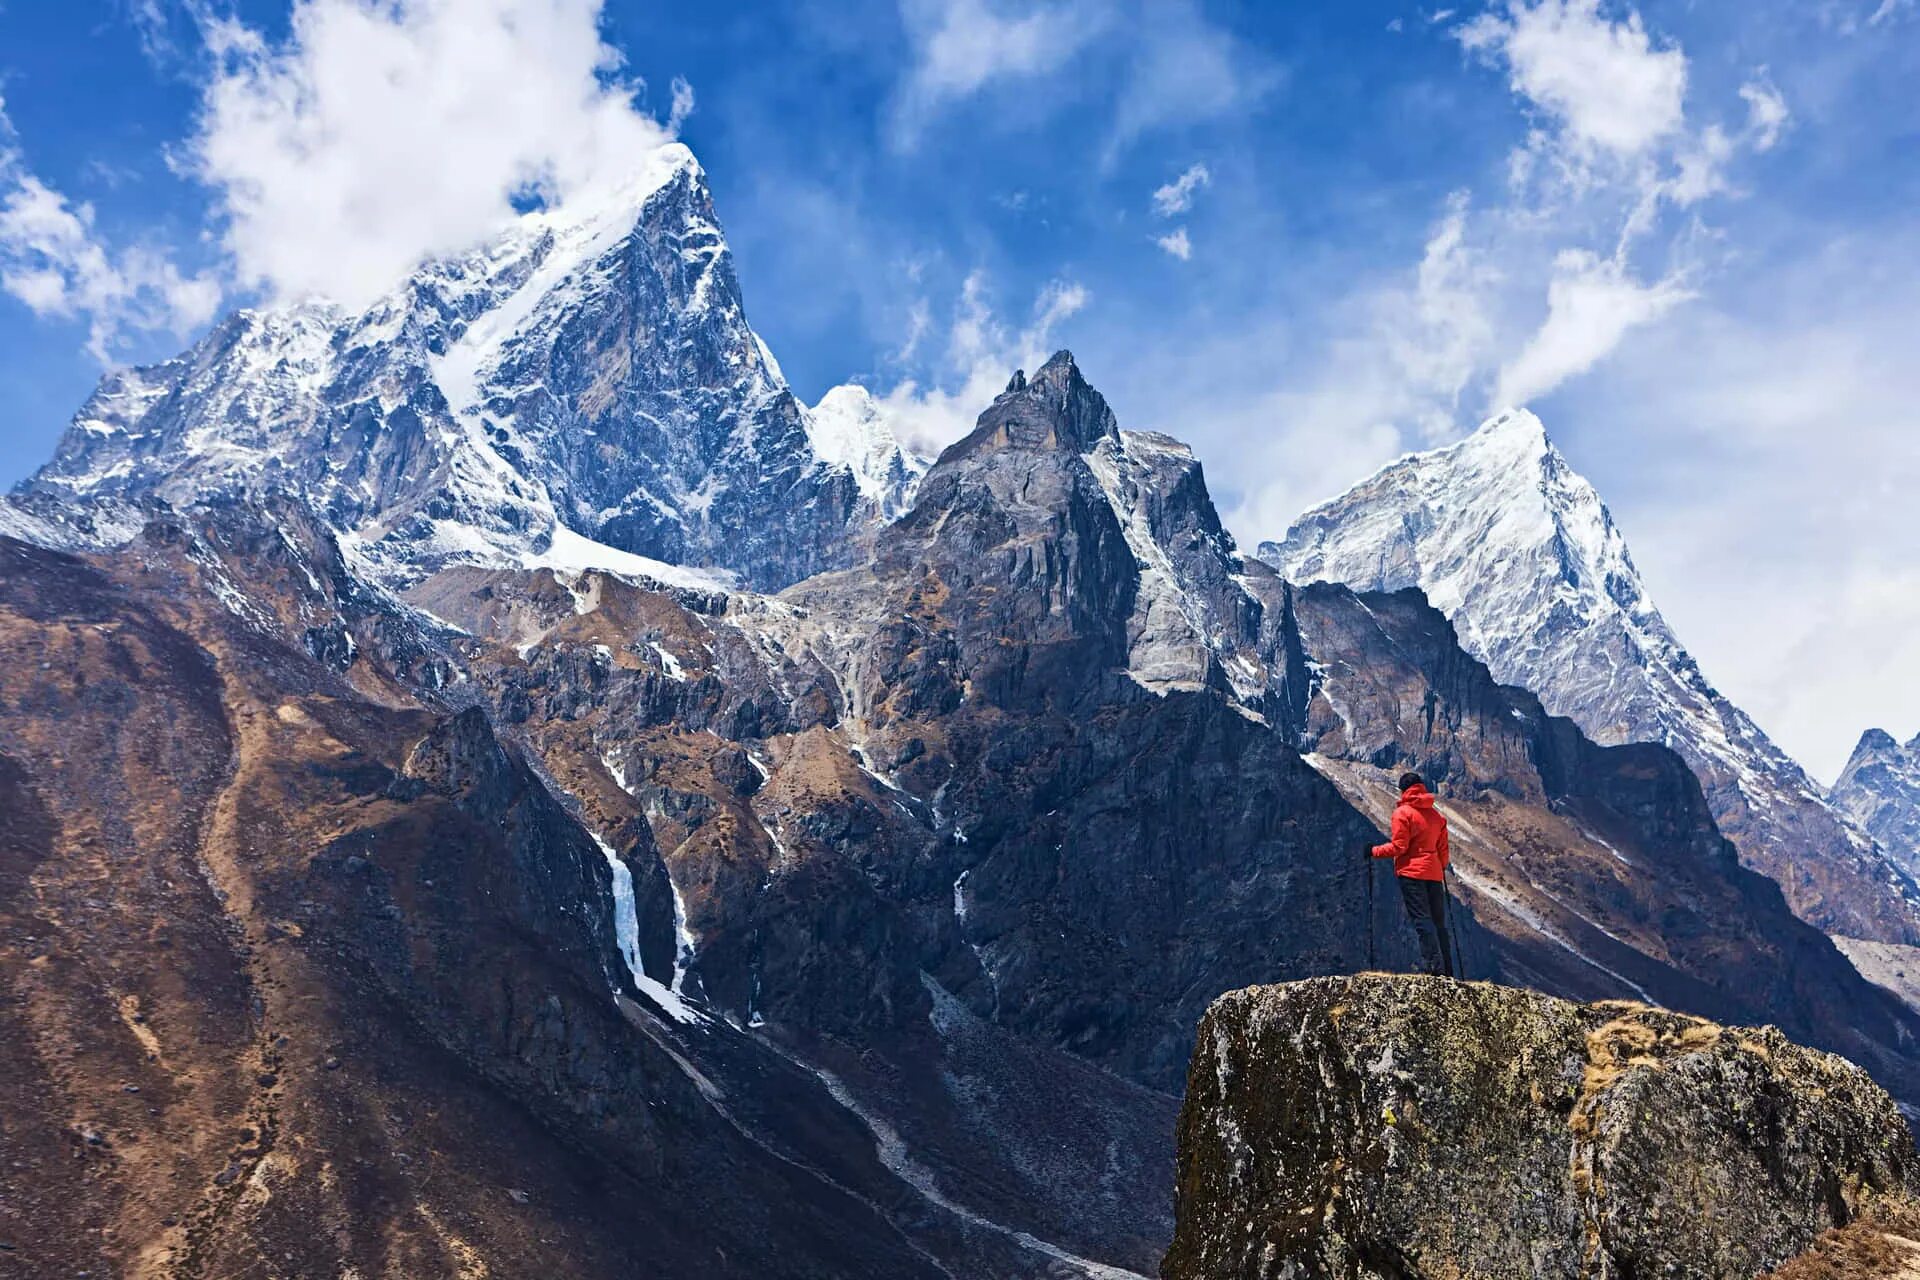 Mount everest is high in the world. Гималаи Эверест Джомолунгма. Непал Эверест. Эверест Душанбе. Национальный парк Джомолунгма.